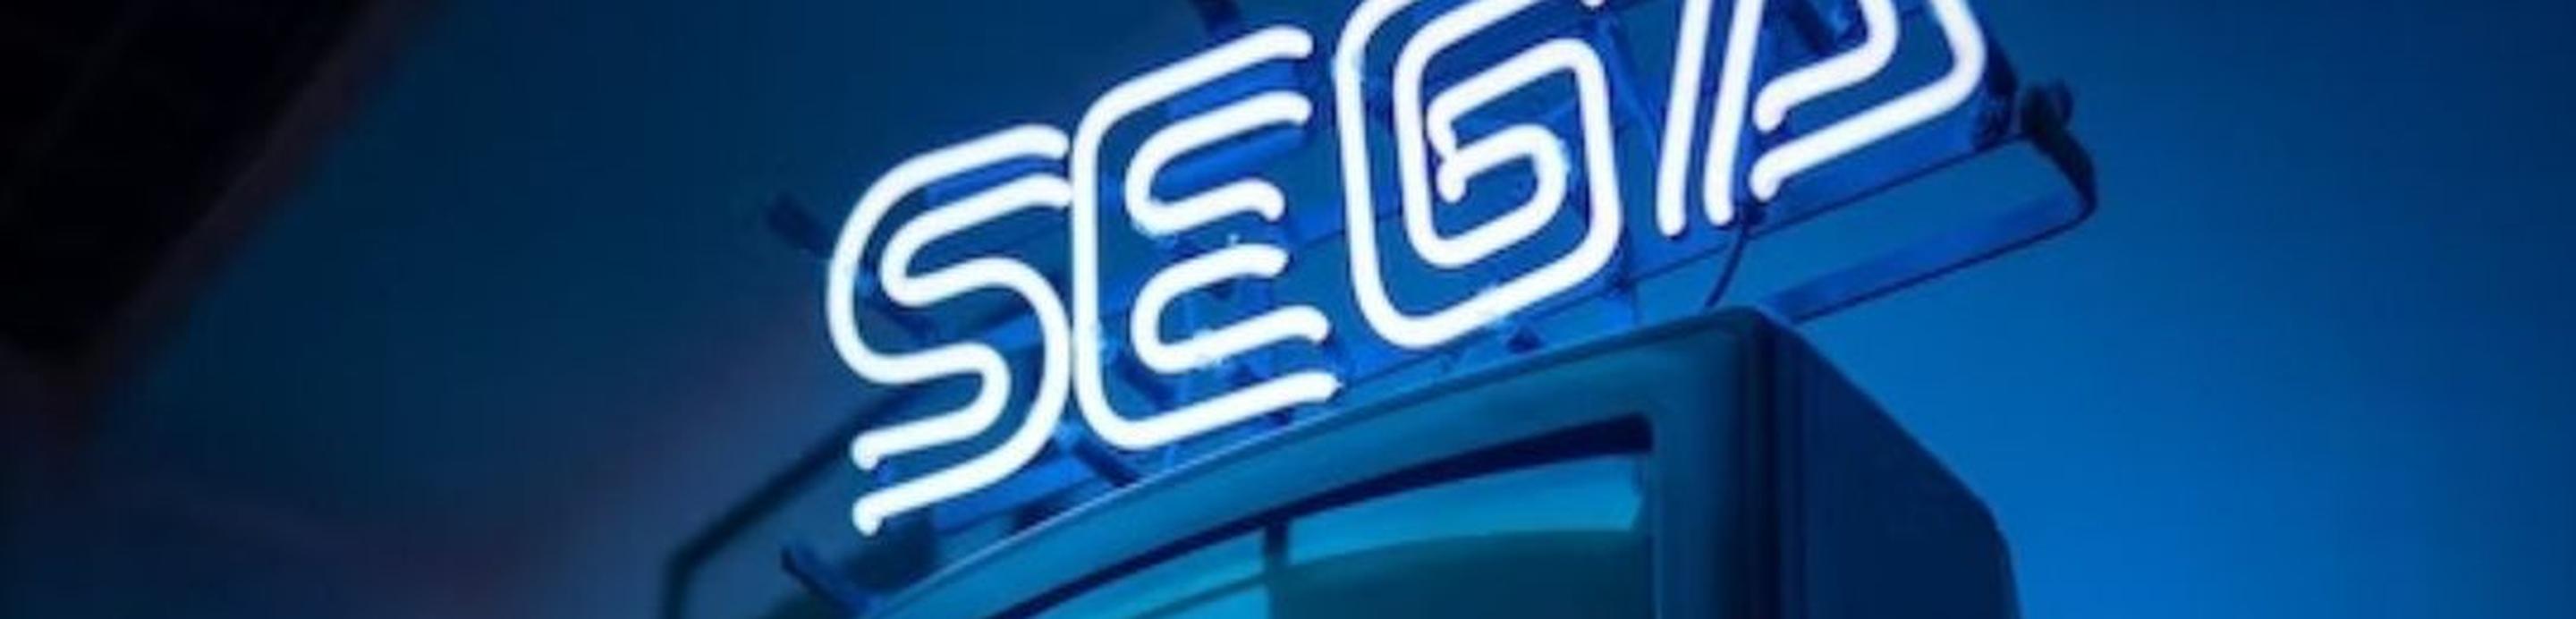 Vieilles télévisions avec un logo de SEGA en néon